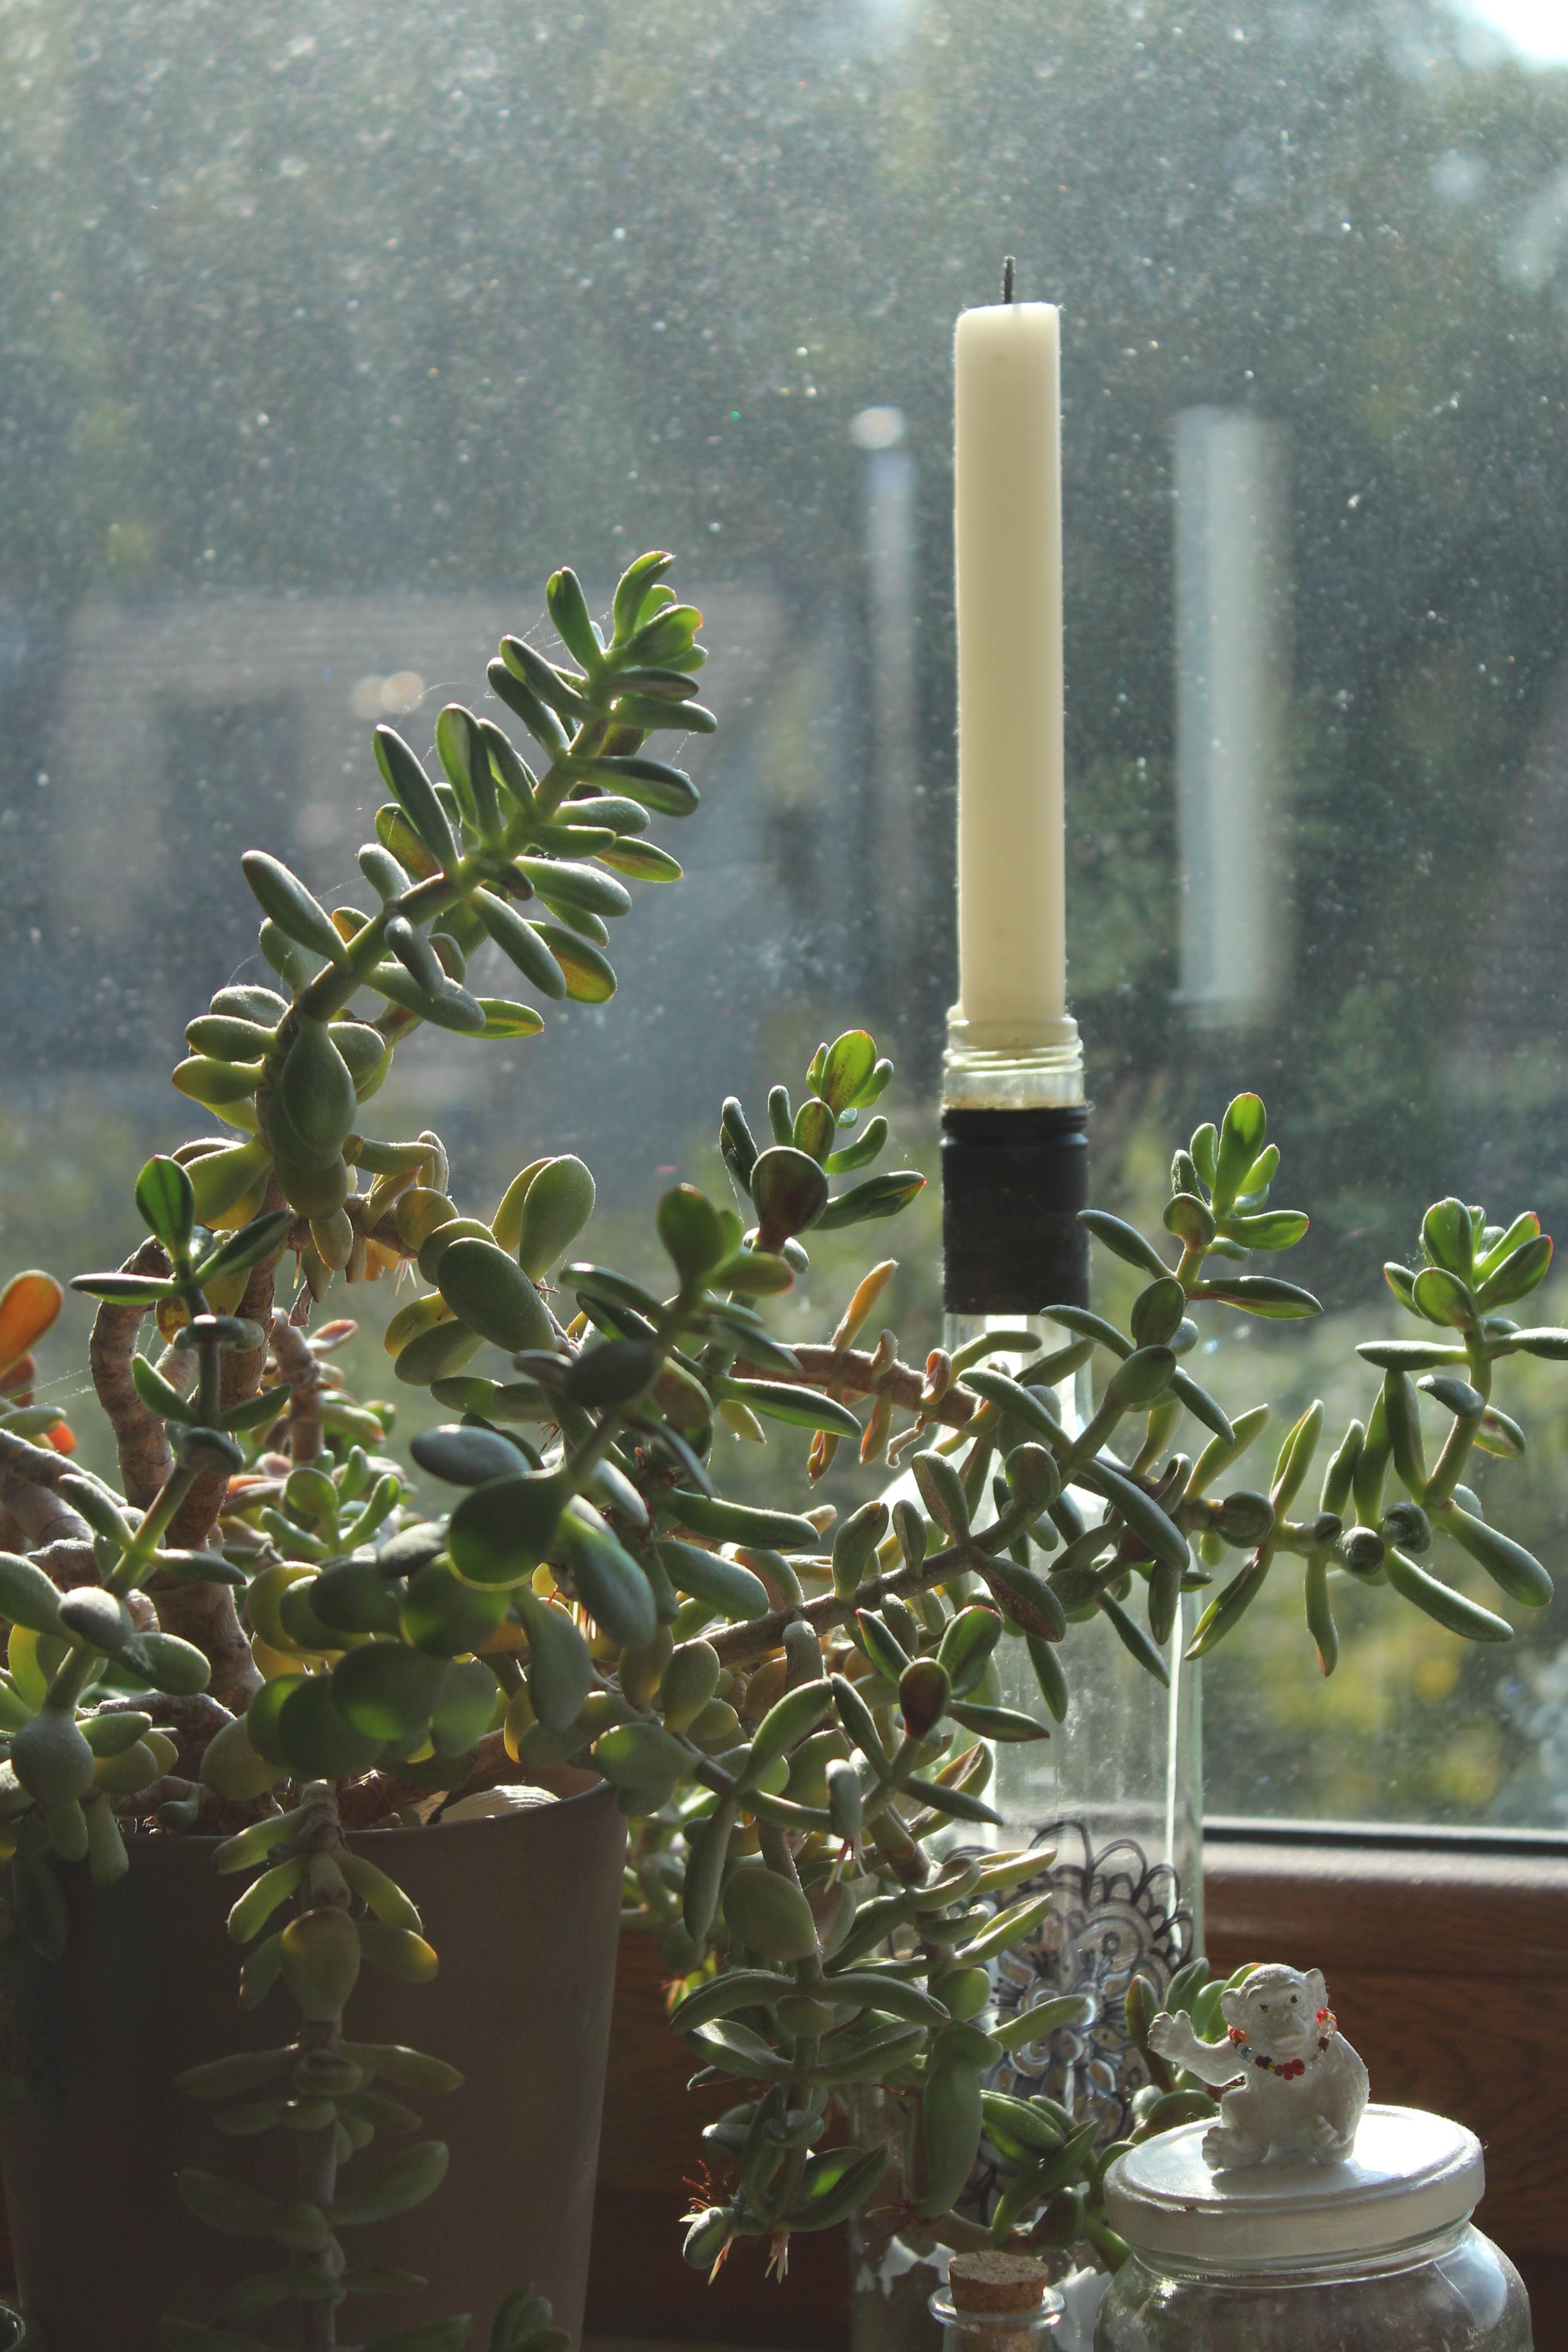 Fenster putzten wird überberwerte
#Fenster #Plants #Kerze 